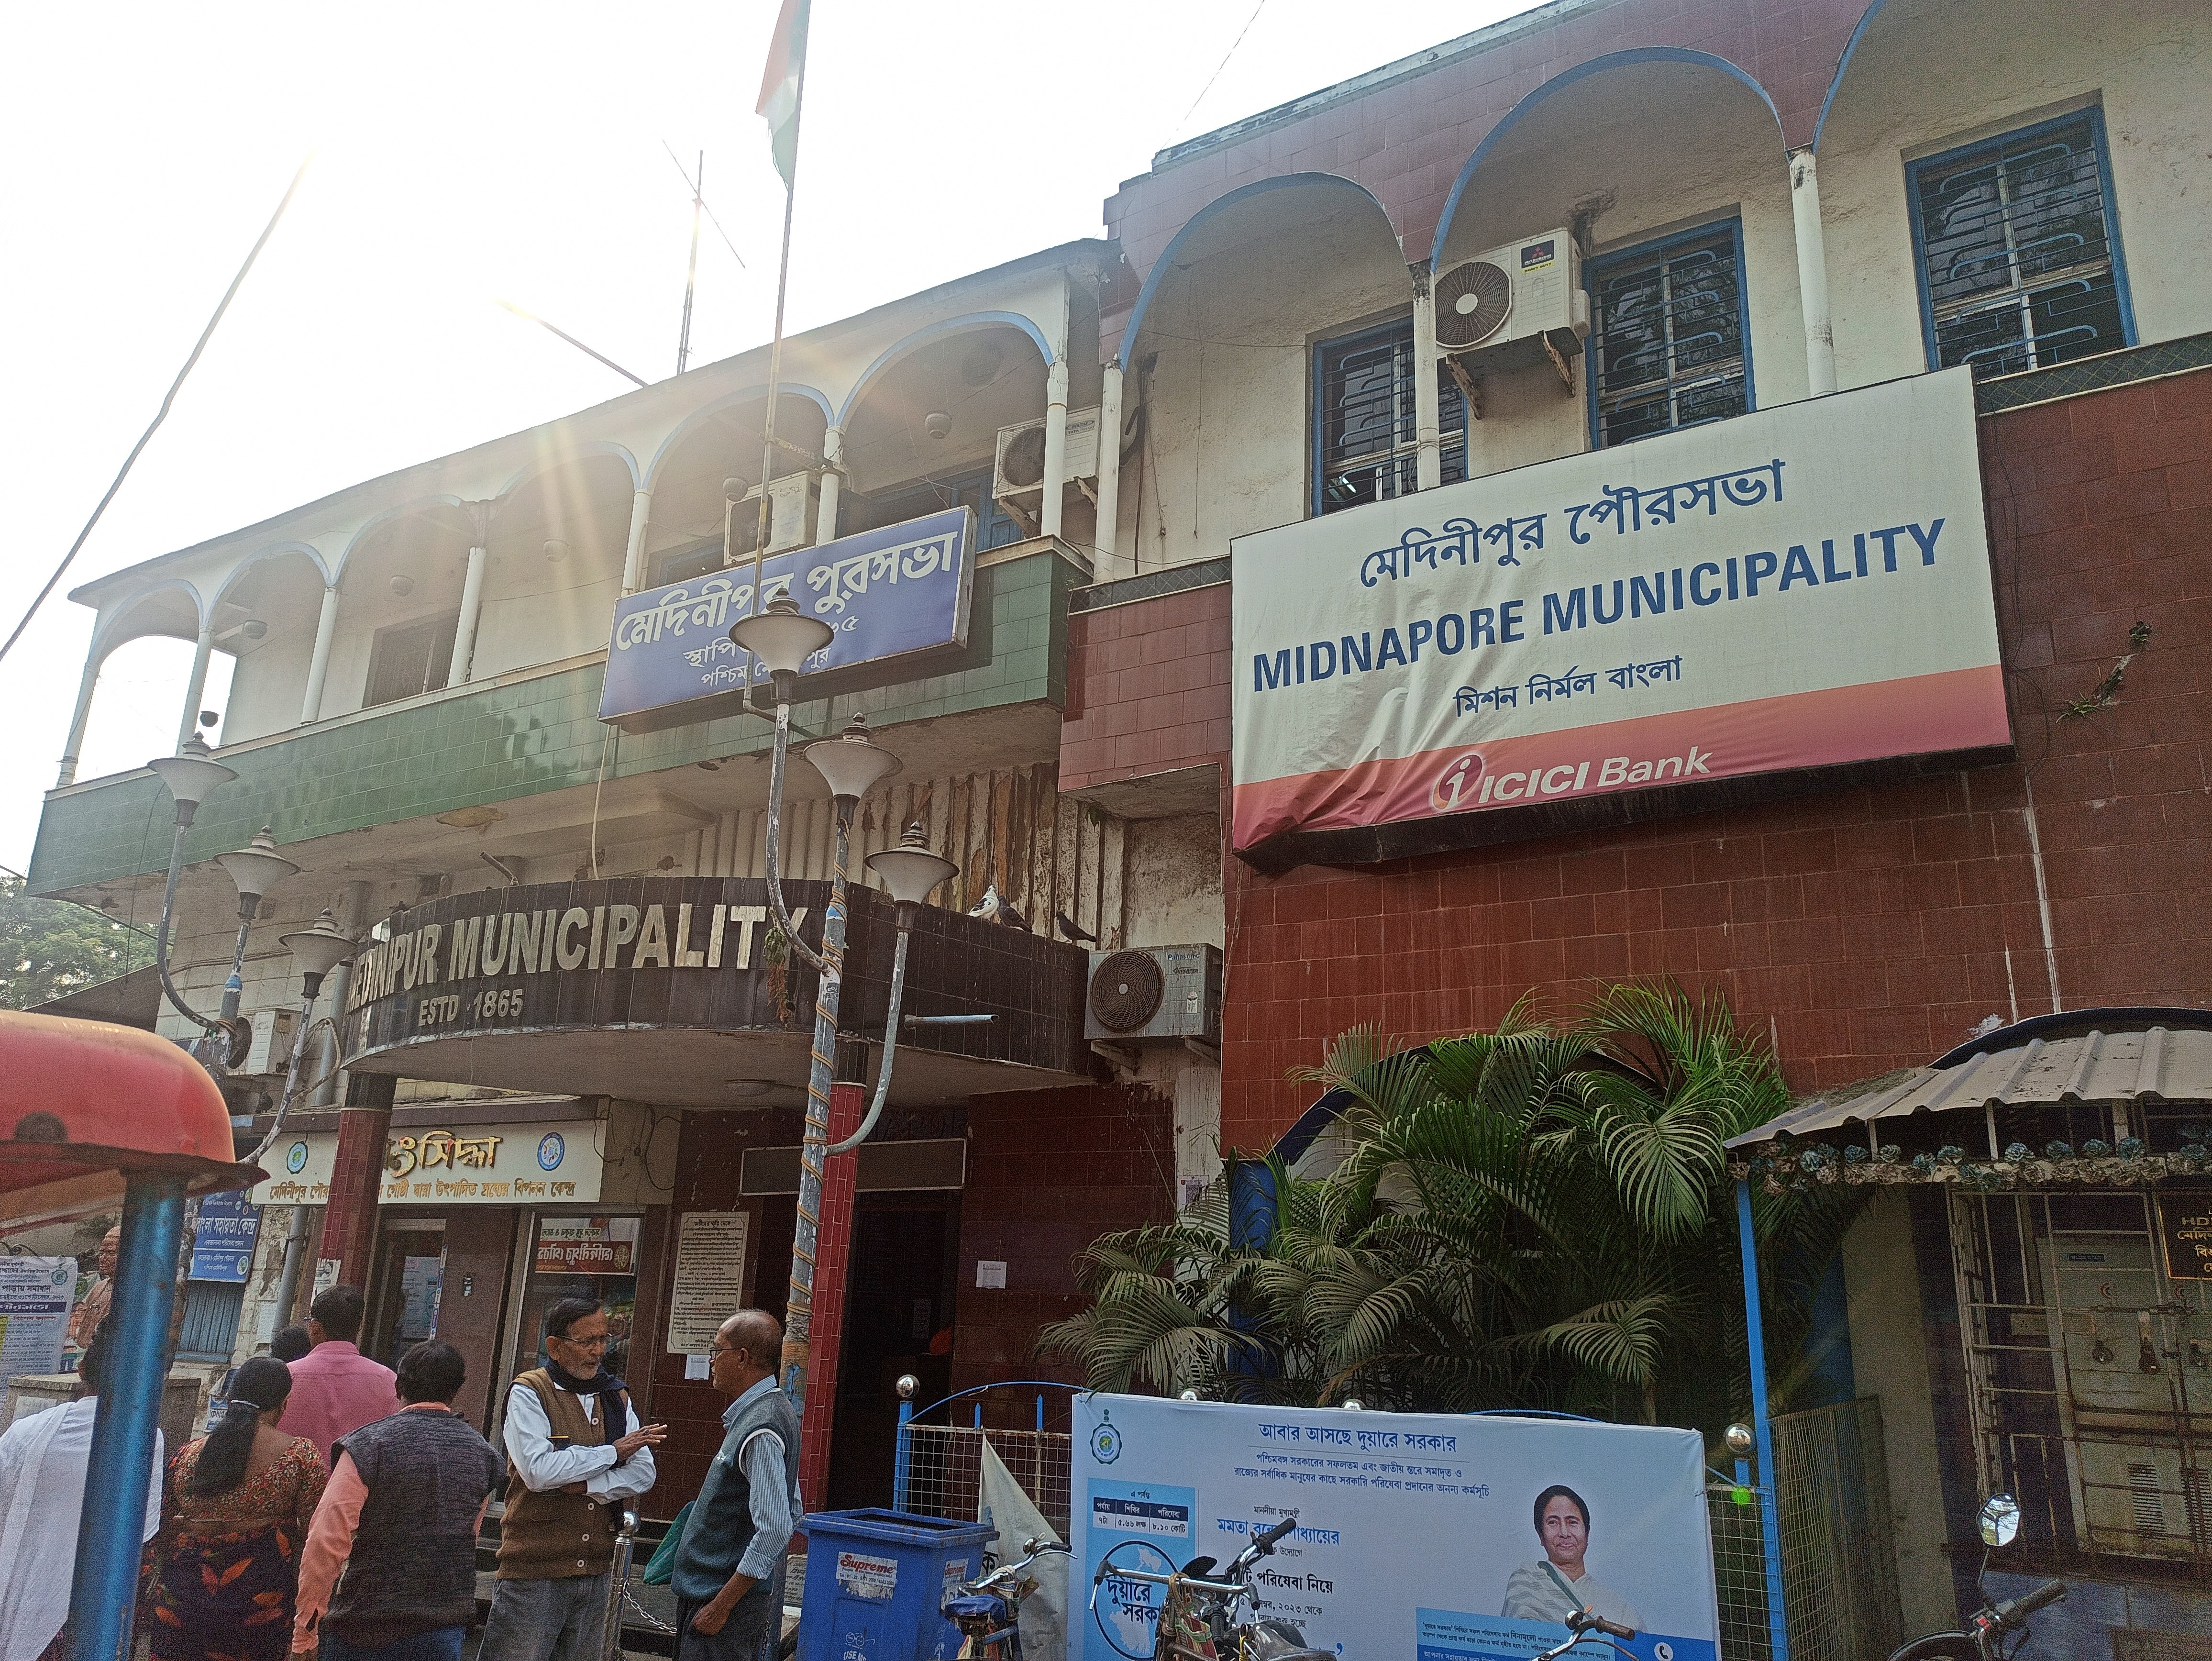 Medinipur Municipality